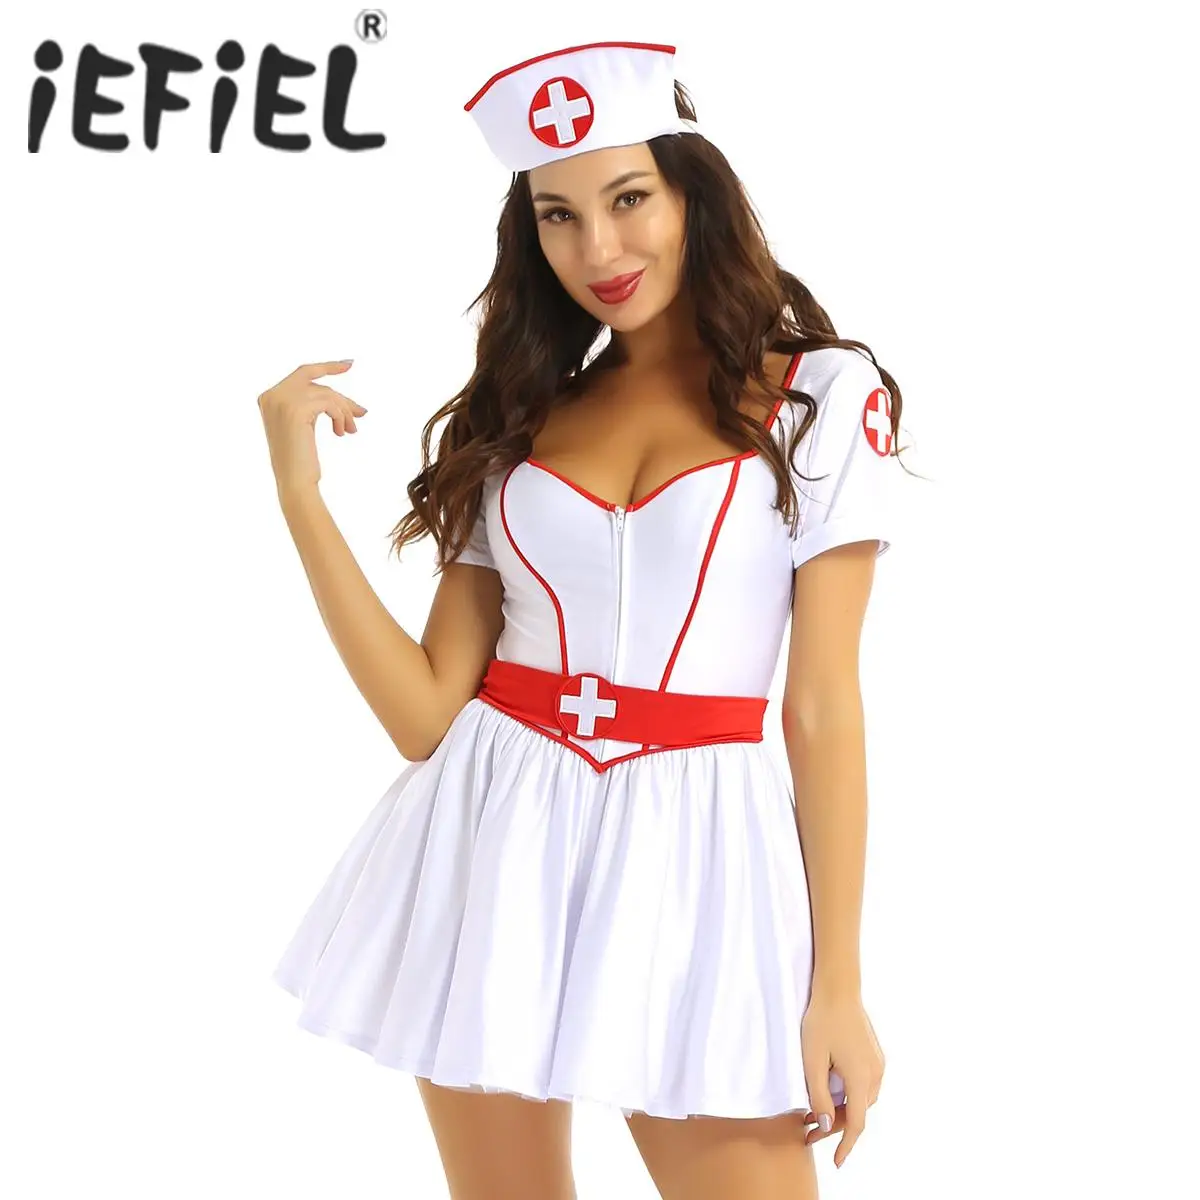 

Женский костюм медсестры или врача, наряд для Хэллоуина, платье-пачка с коротким рукавом и вырезом сердечком, с повязкой на голову и поясом